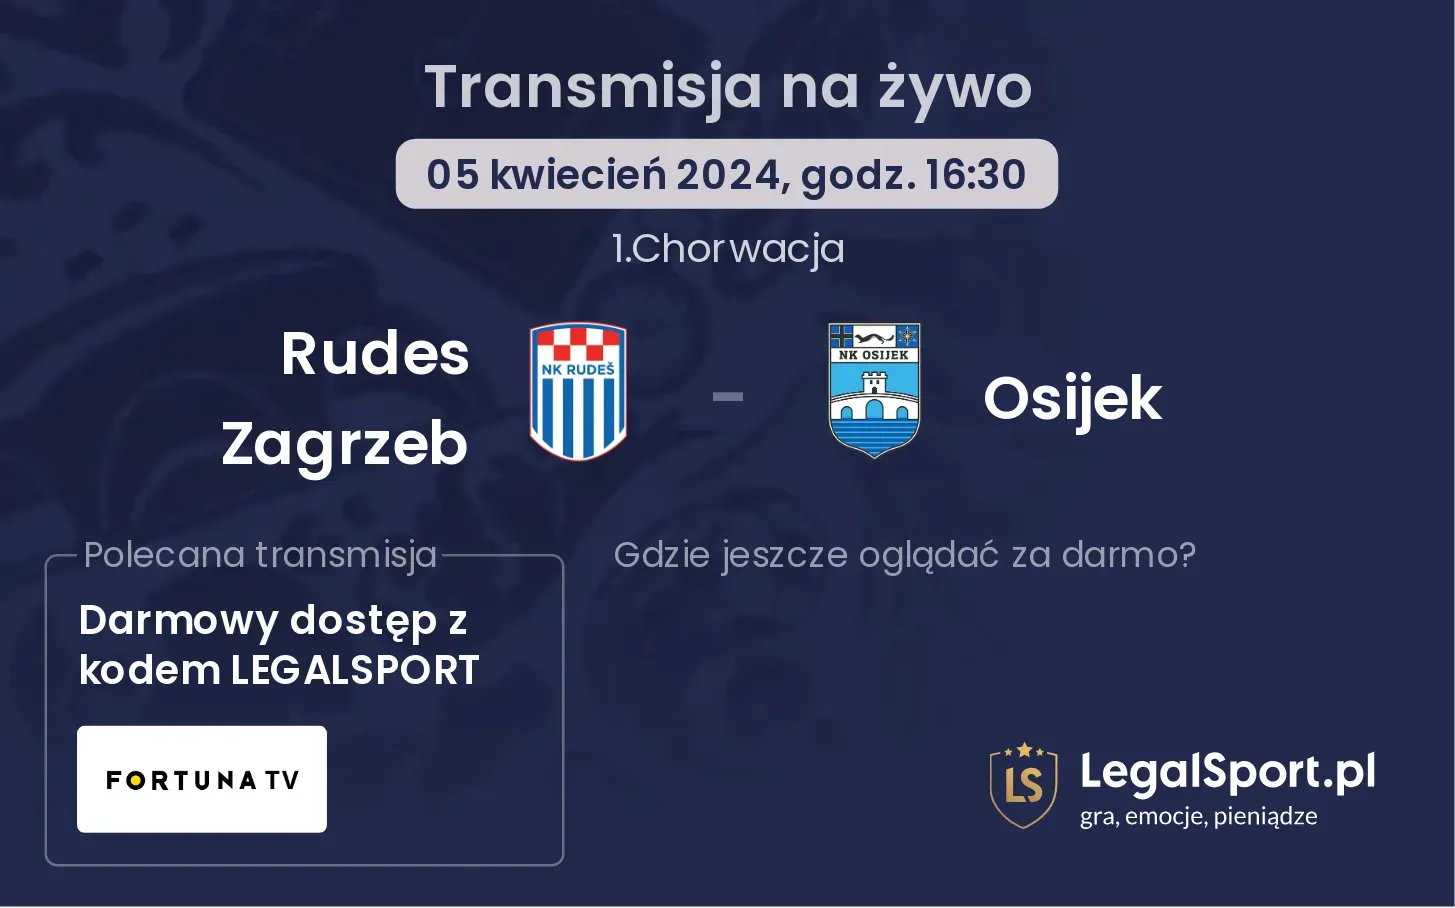 Rudes Zagrzeb - Osijek transmisja na żywo